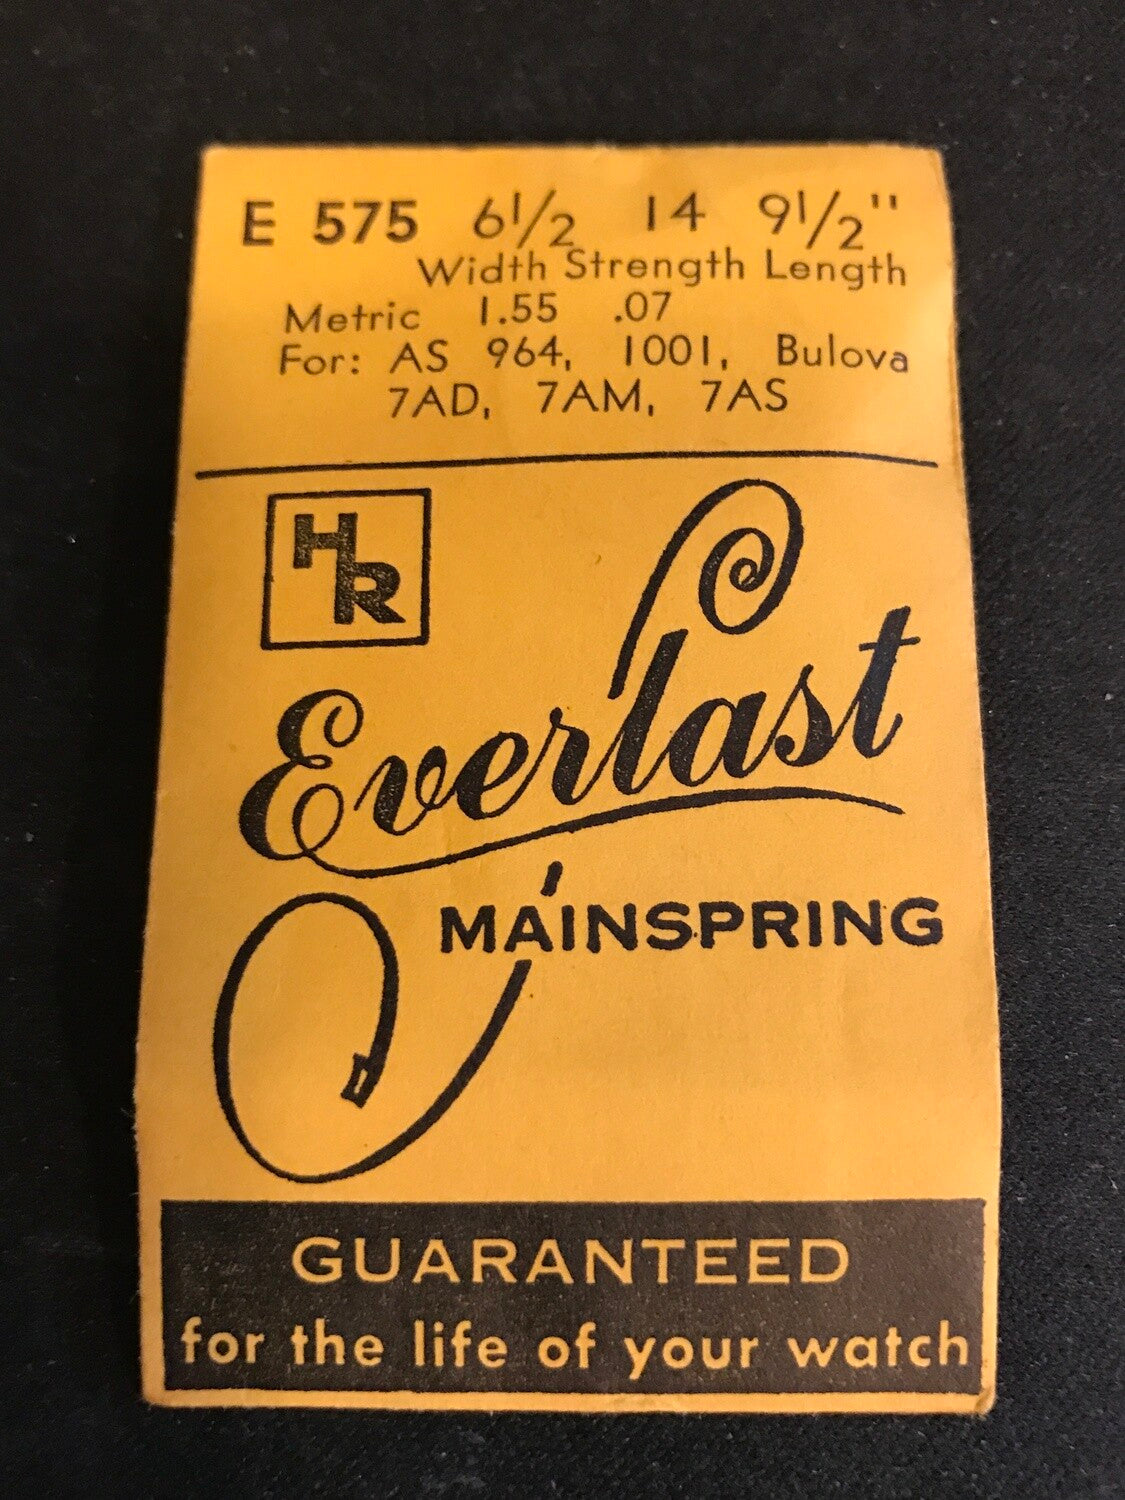 HR Everlast Mainspring No. E575 for AS 964, 1001, Bulova 7AD, 7AM, 7AS - Steel